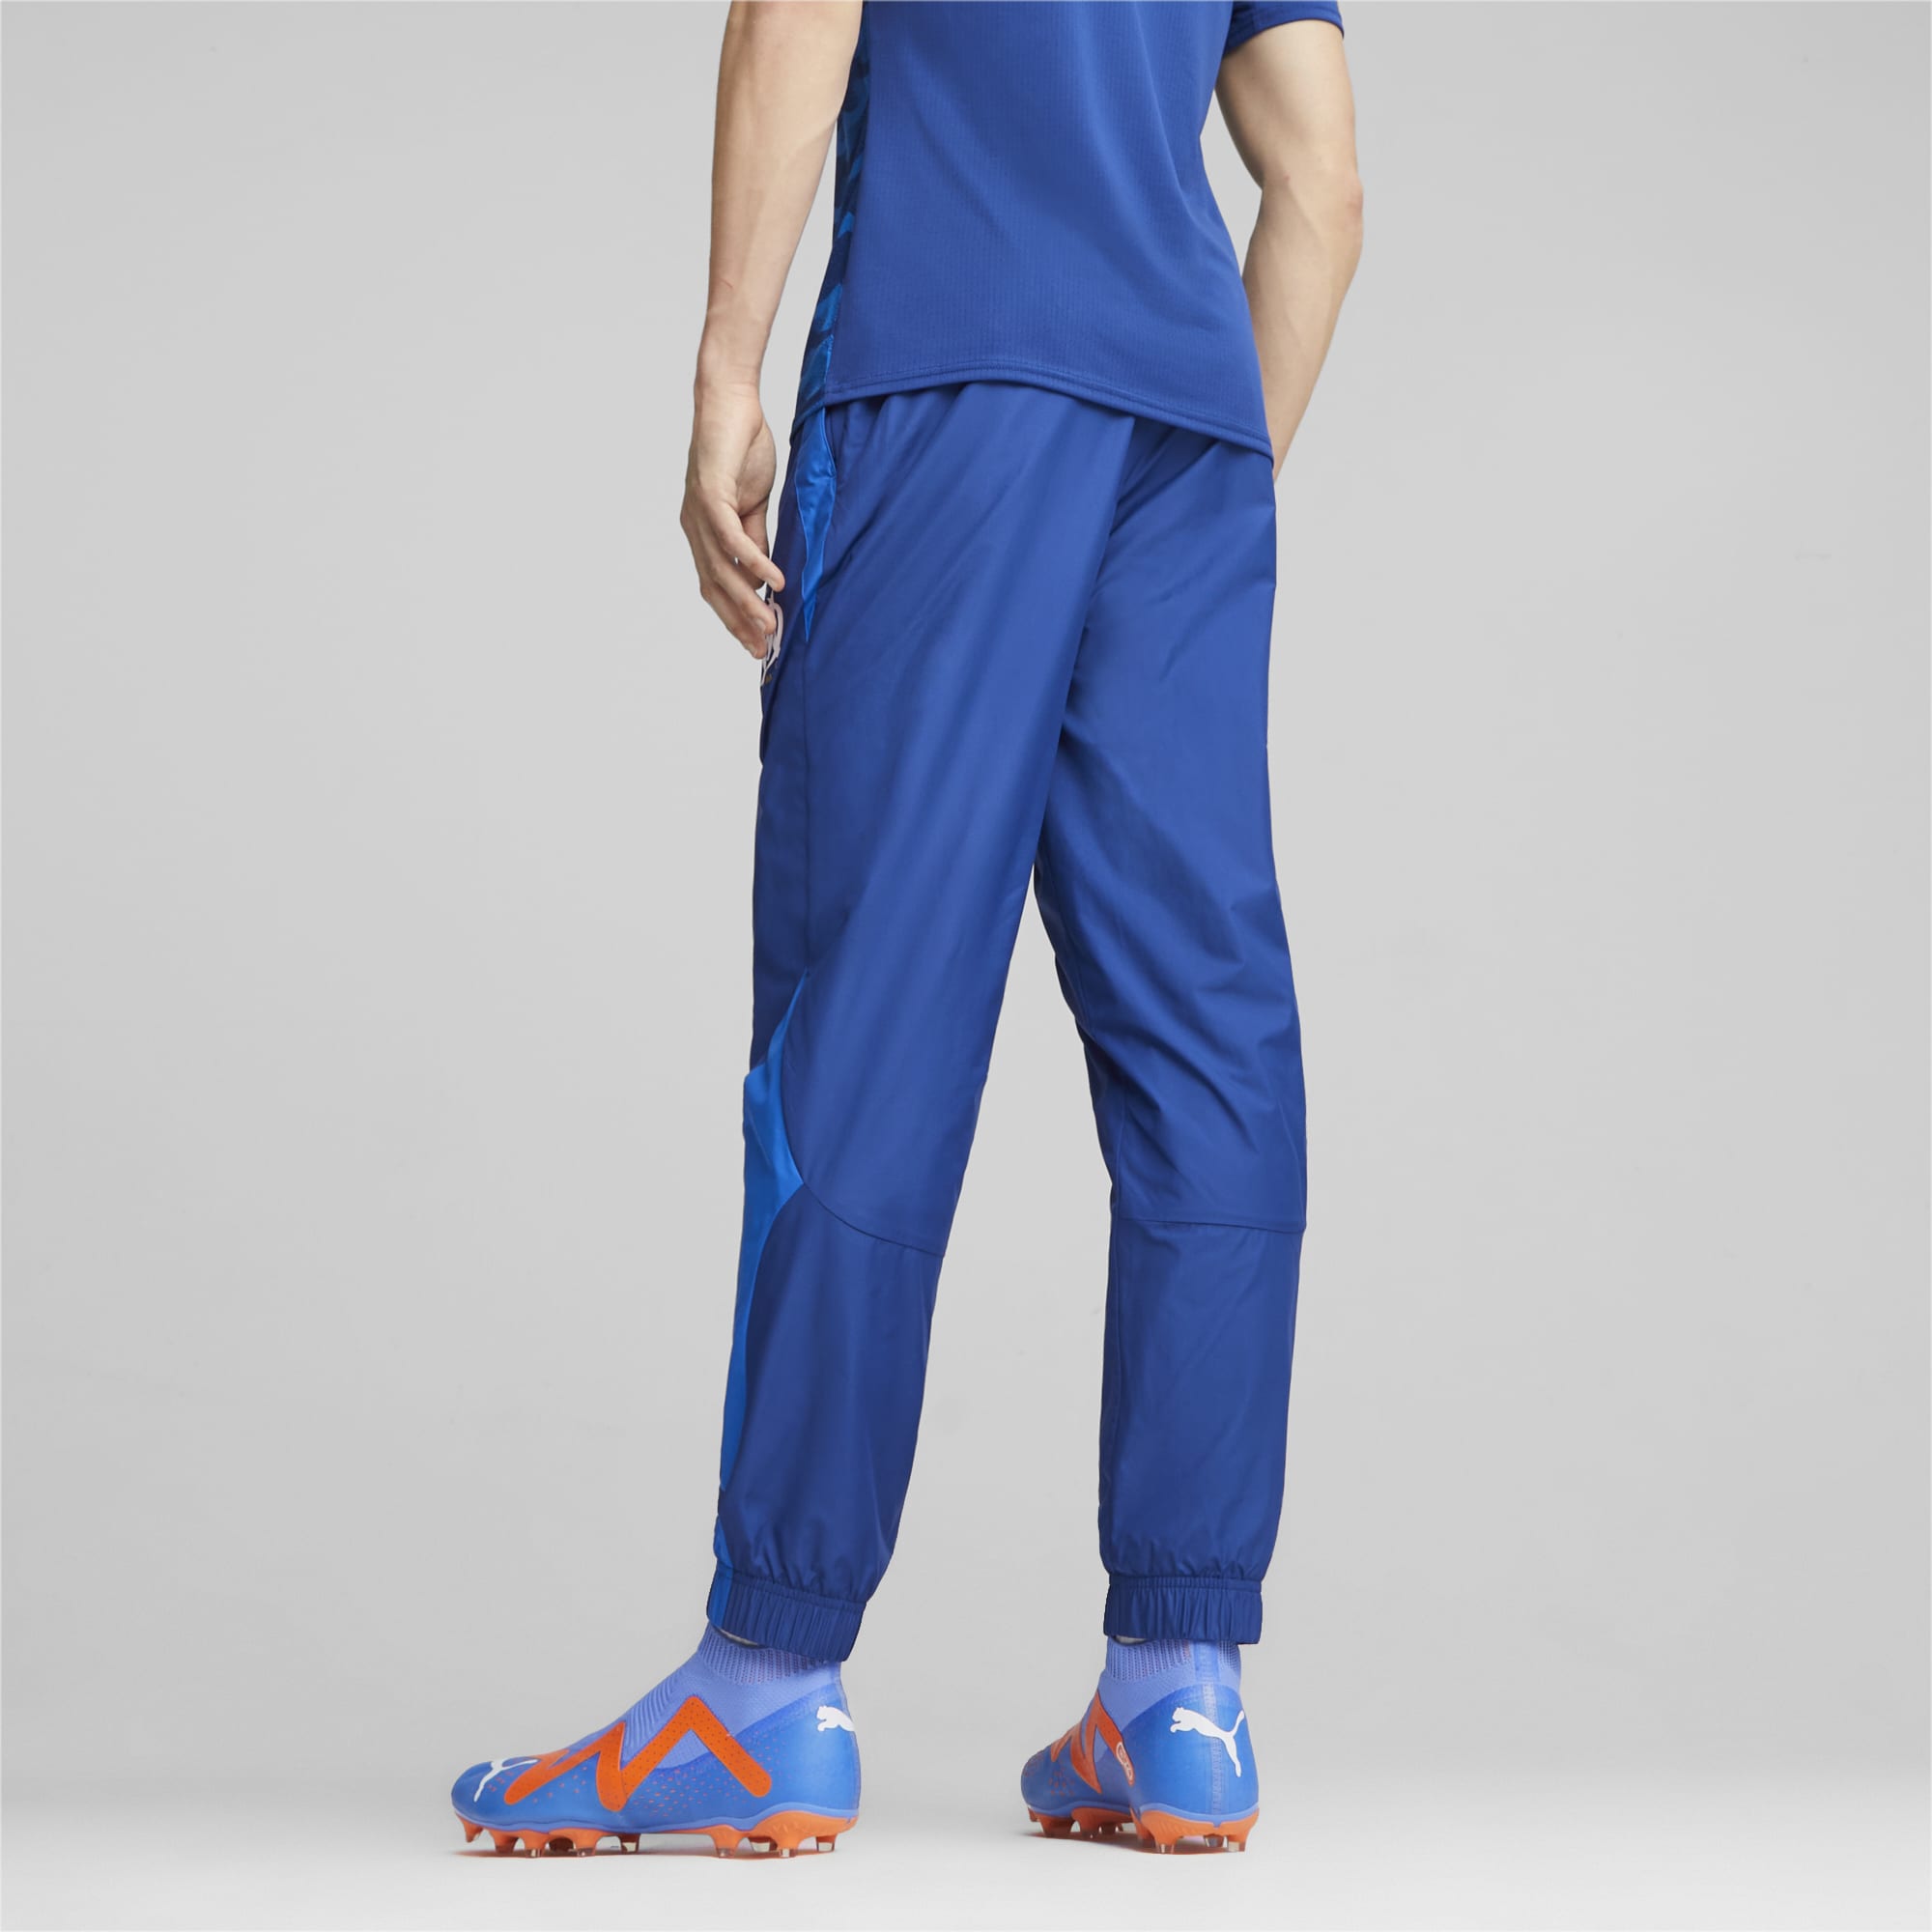 Men's PUMA Olympique De Marseille Prematch Football Pants, Royal Blue, Size 3XL, Clothing